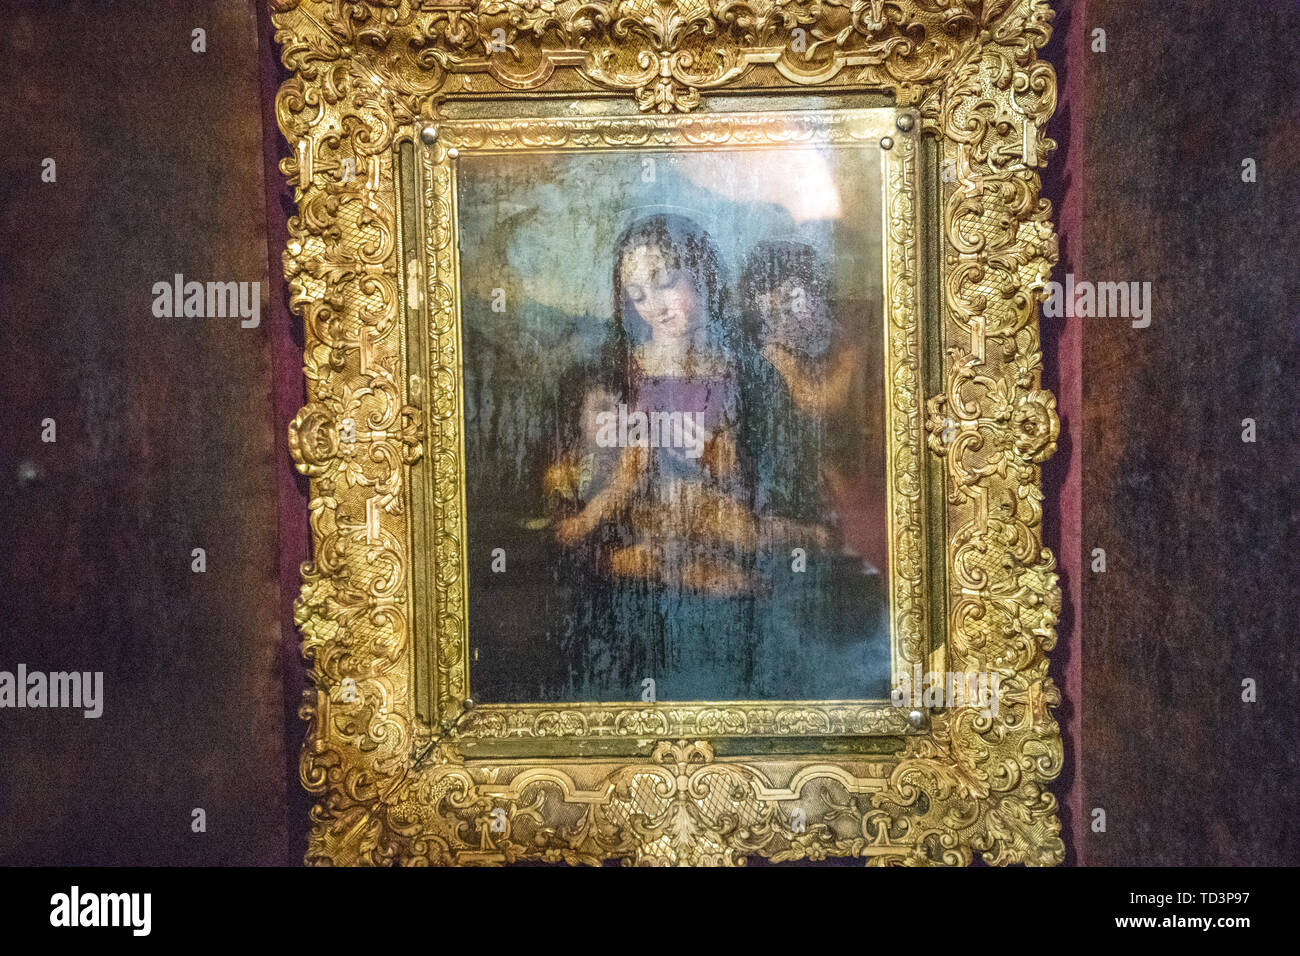 Religiöse Kunstwerke auf der Anzeige innerhalb der Beata Maryam Kirche, Ruhestätte von Menelik II. und seiner Frau und seiner Tochter. Addis Abeba, Äthiopien. Stockfoto